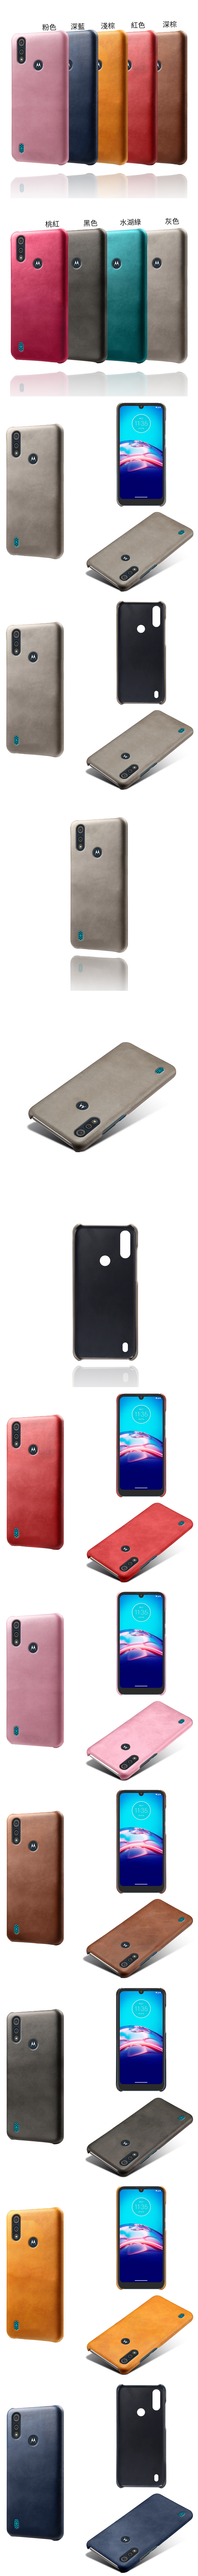 Motorola Moto e6s 皮革保護殼(PLAIN) - 牛皮仿真皮紋單色背蓋素色多色手機殼保護套手機套